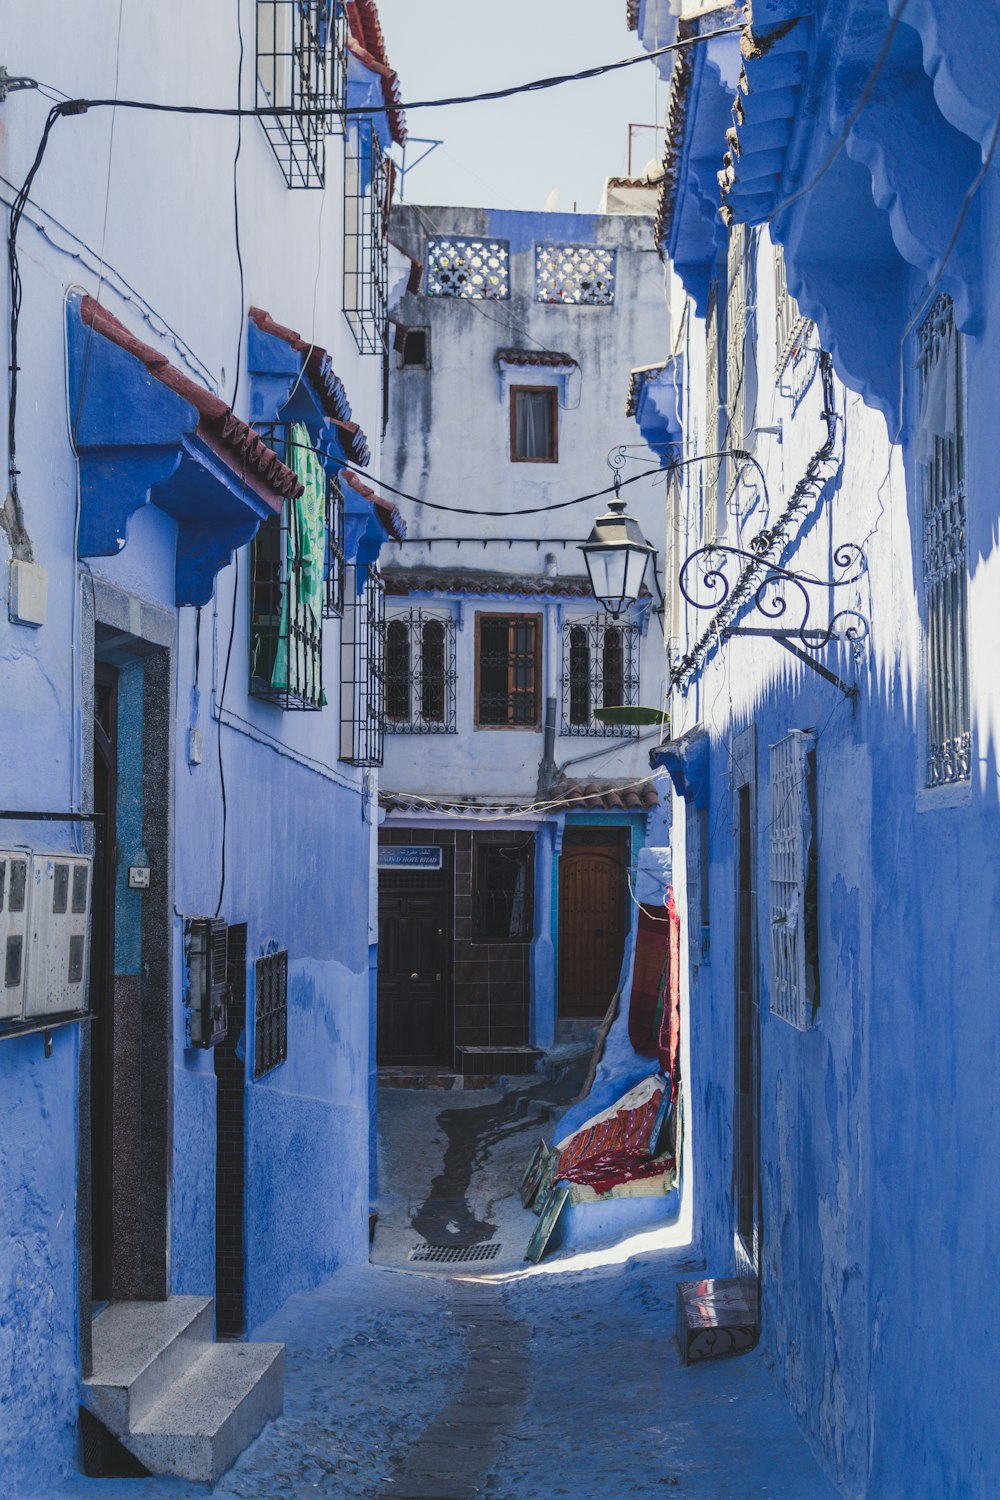 vicolo degli edifici dipinto di blu durante il giorno